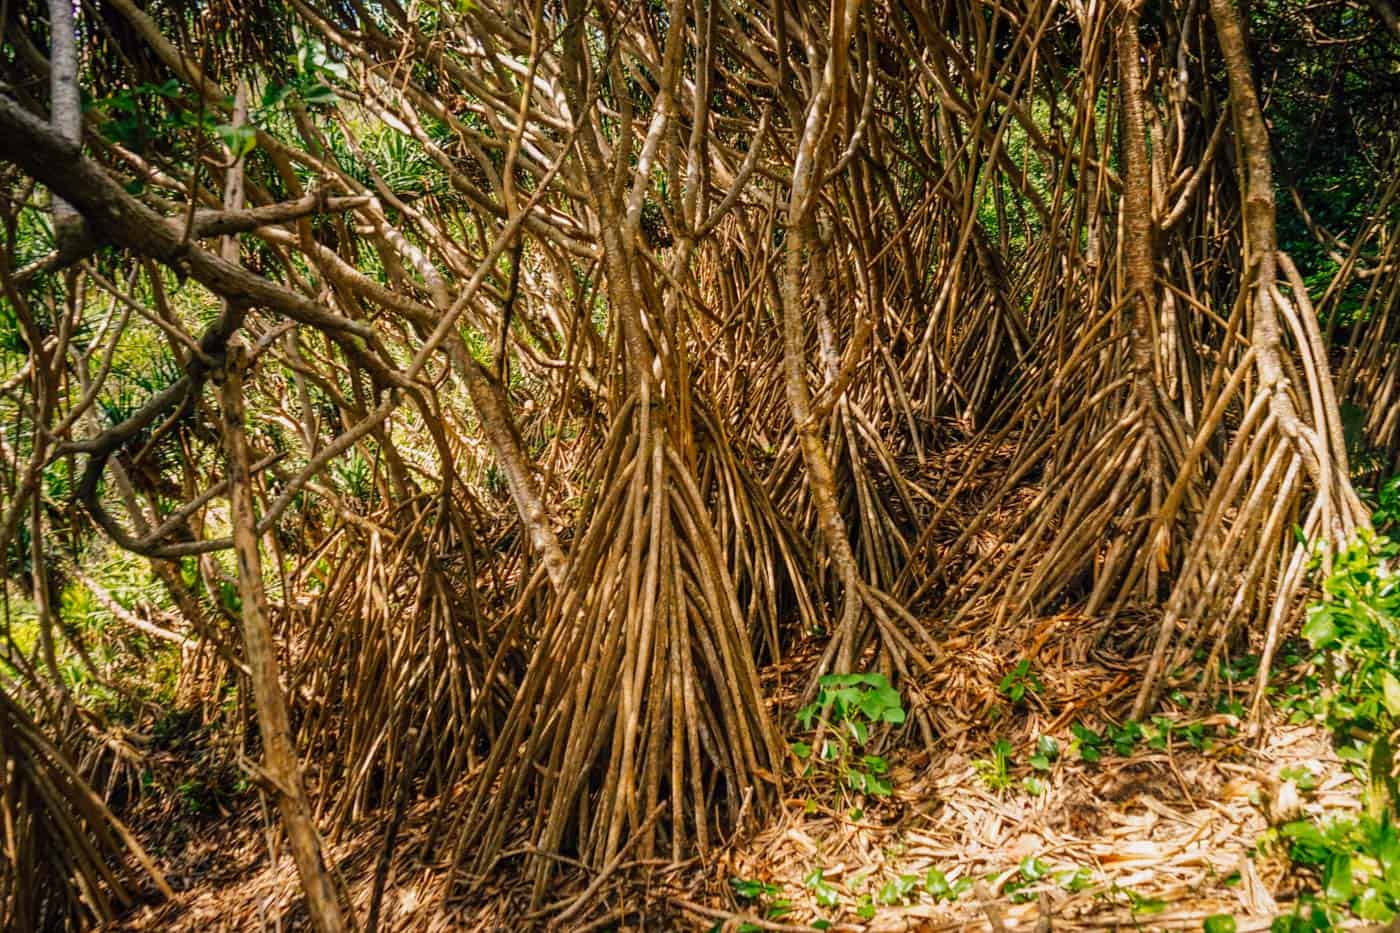 Mangrove roots in Eua Tonga